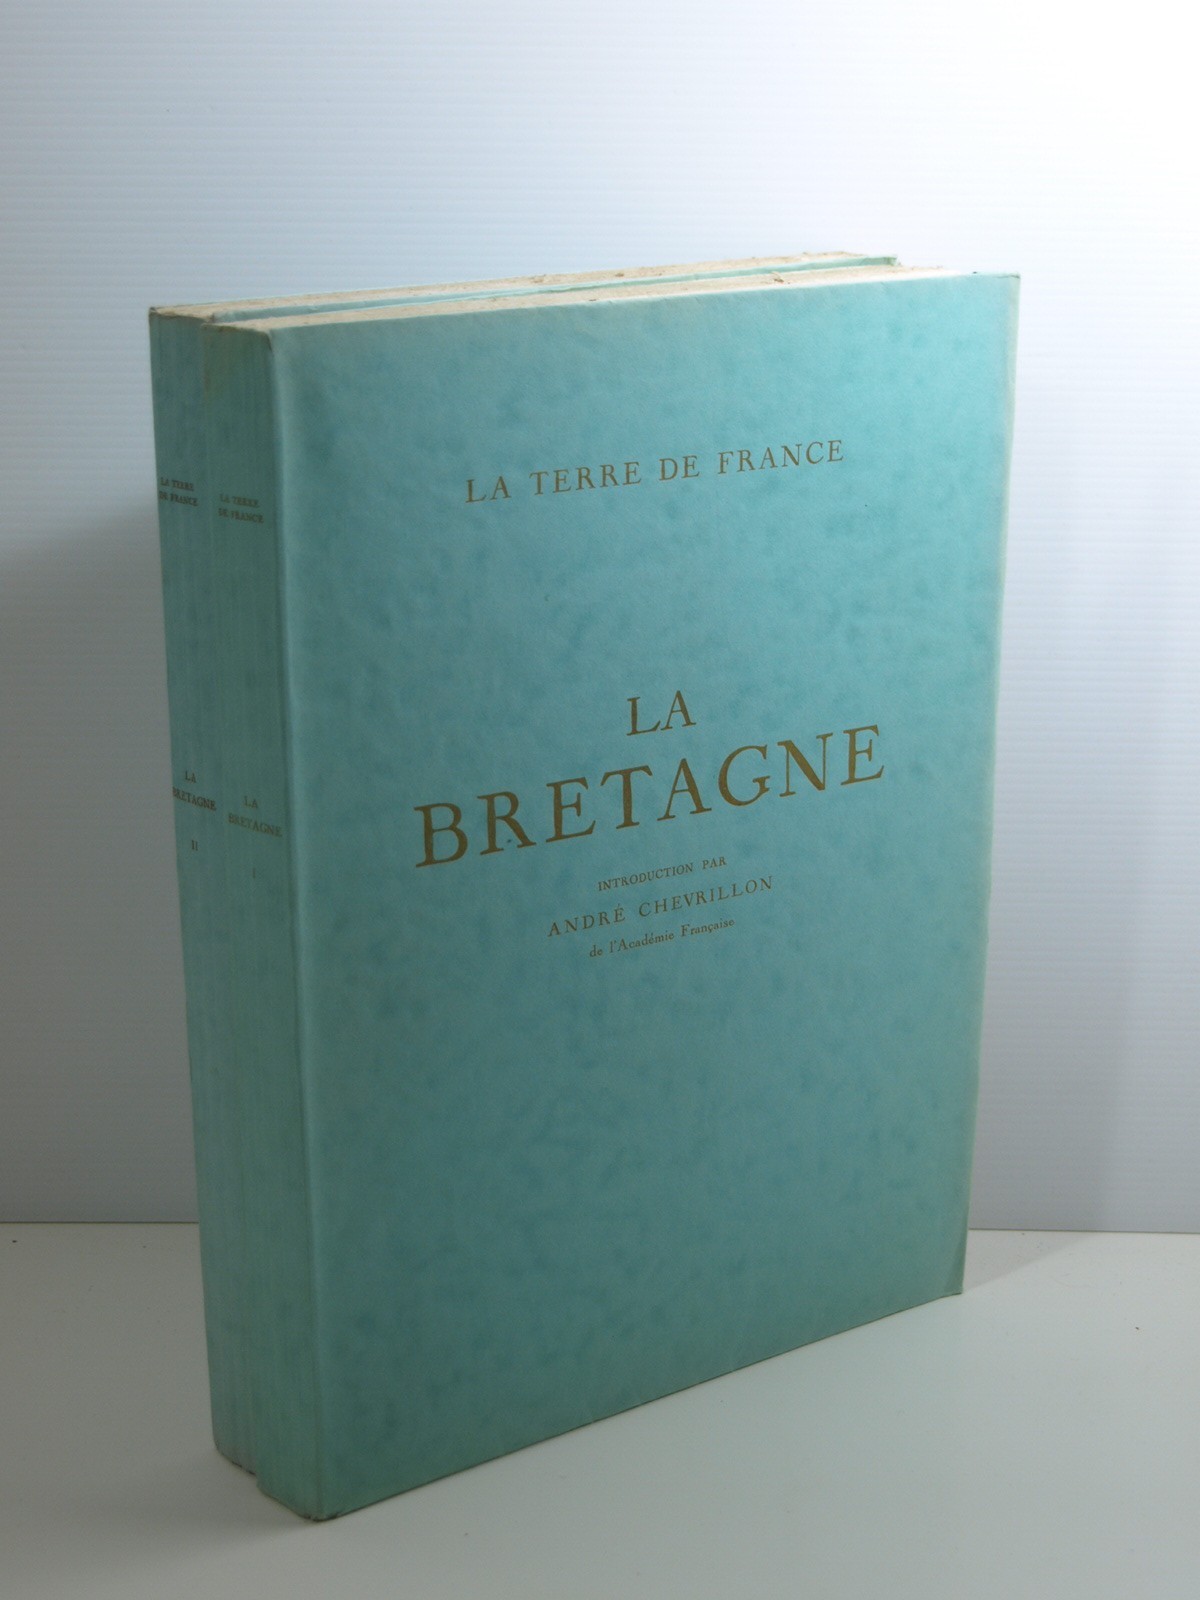 Chevrillon André (introduction) : La Bretagne. 2 tomes.